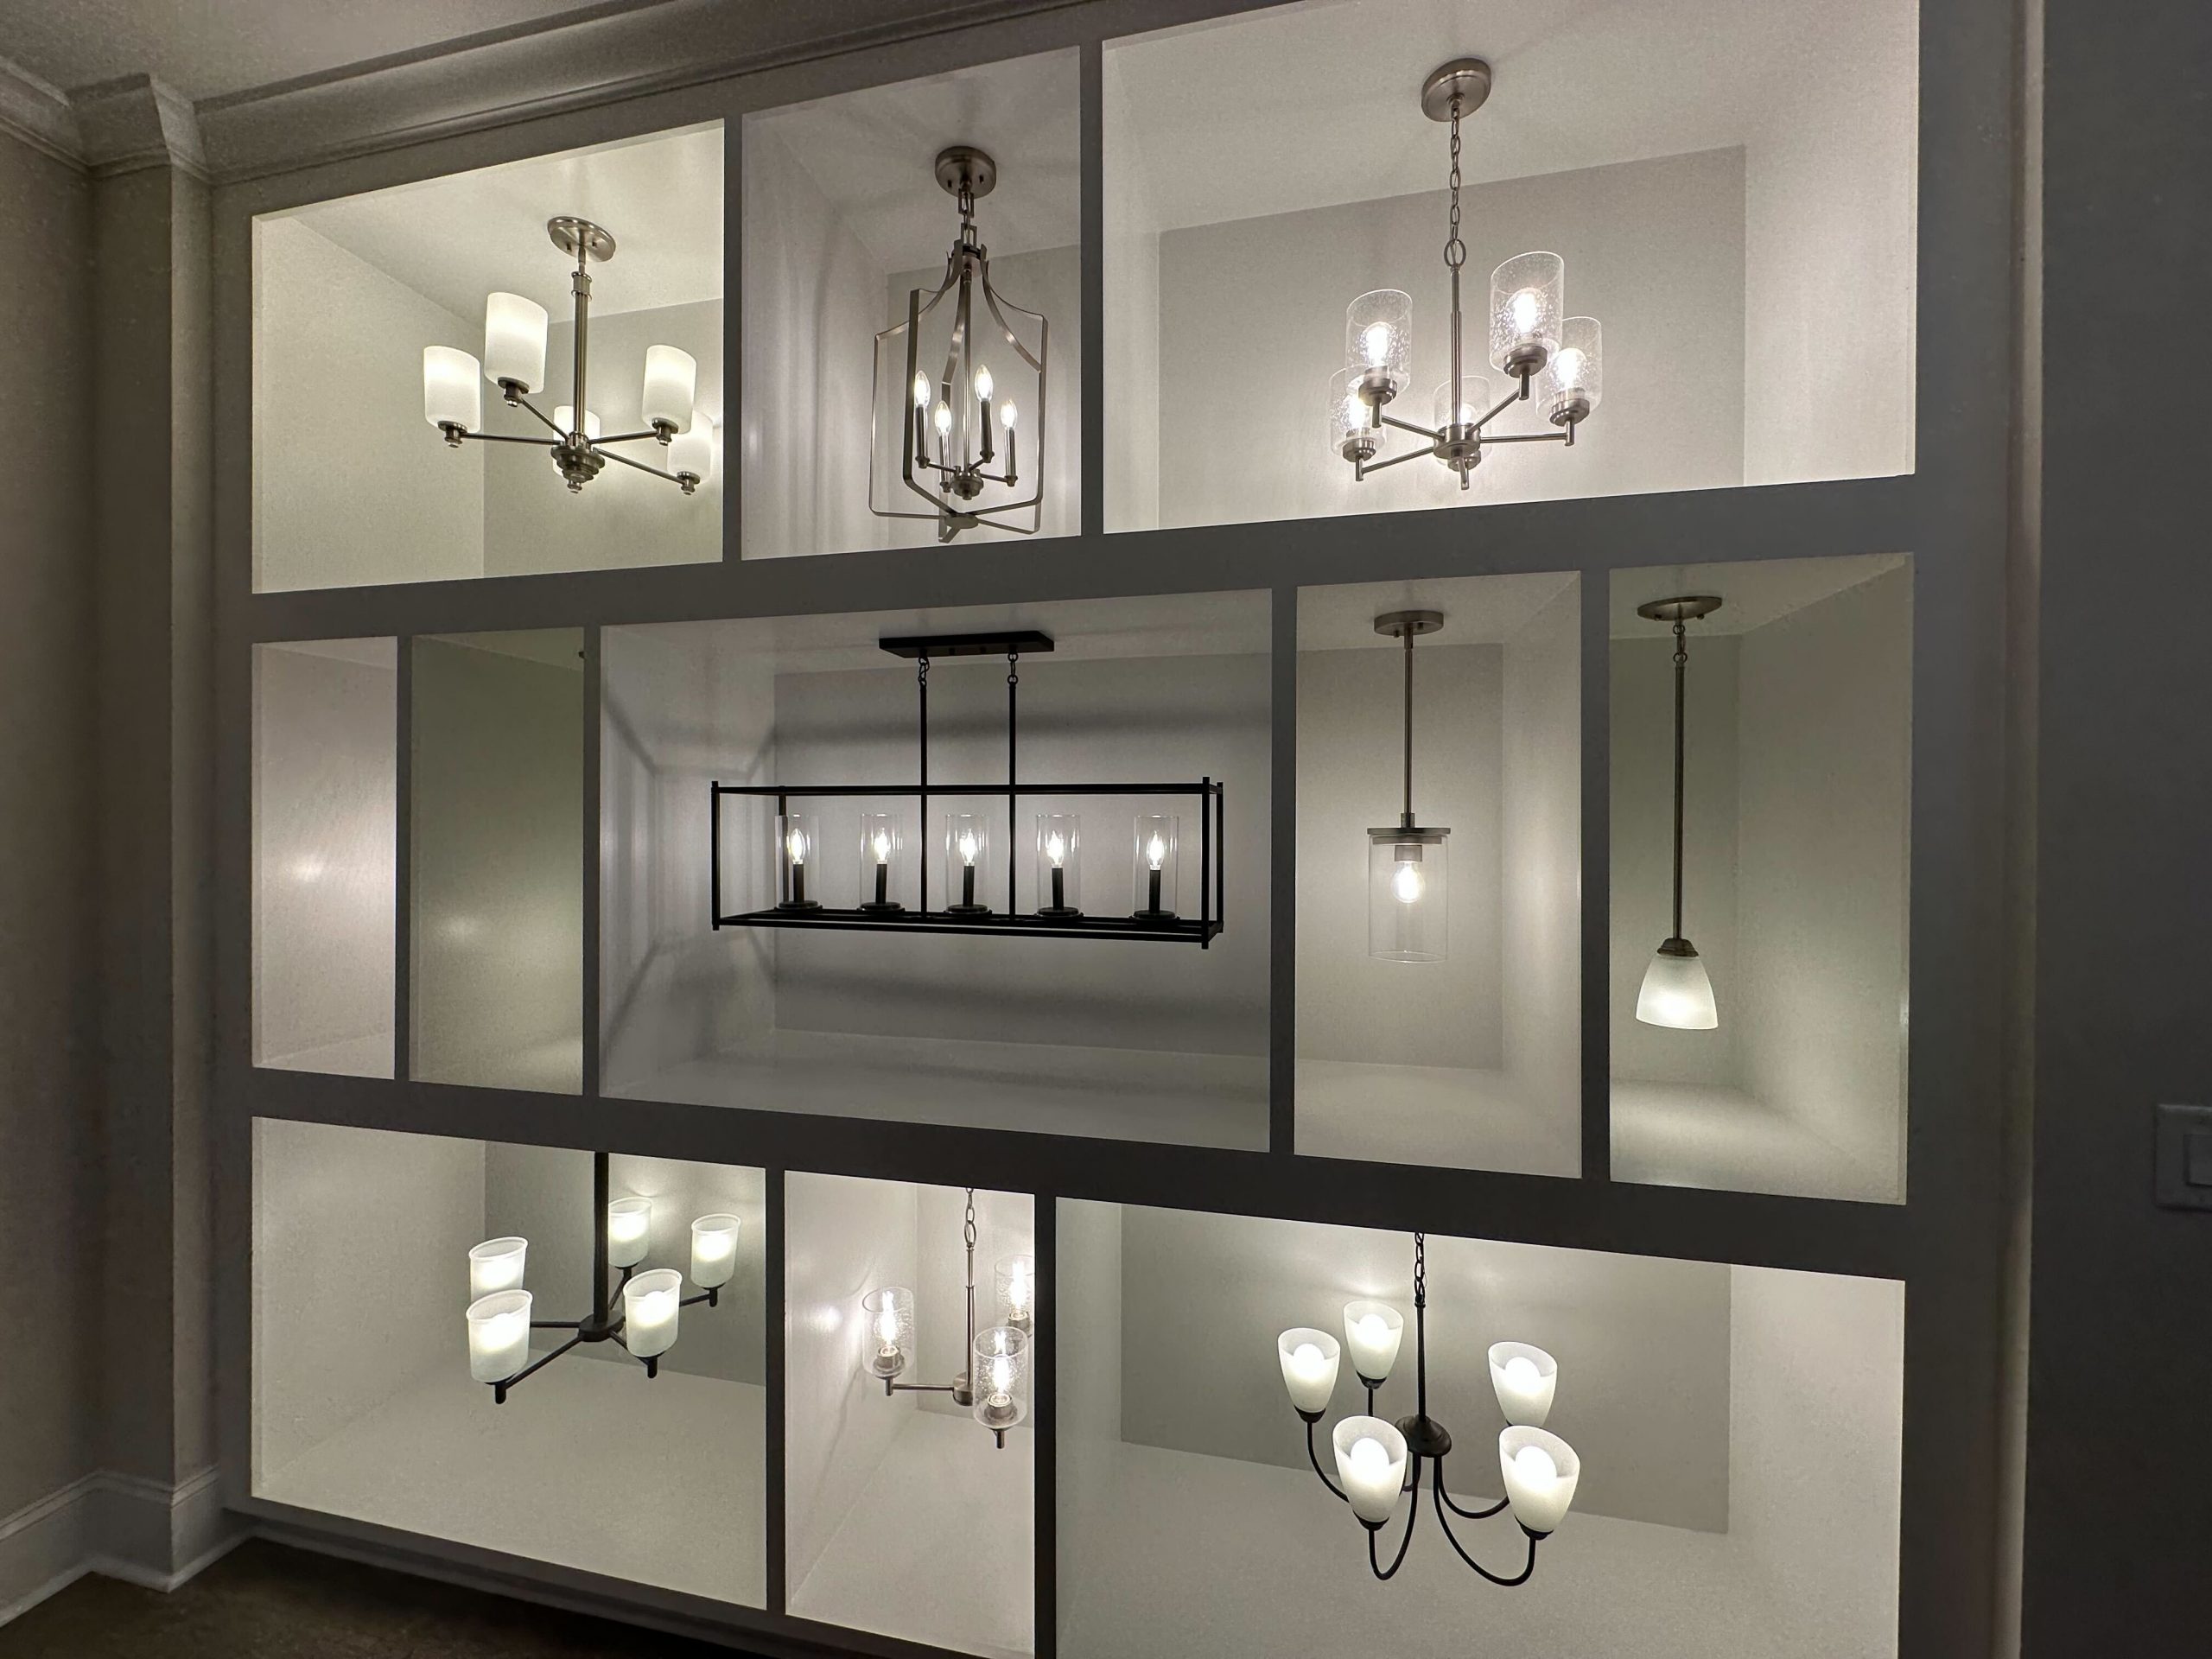 Kerley Family Homes Design Studio Lighting Options